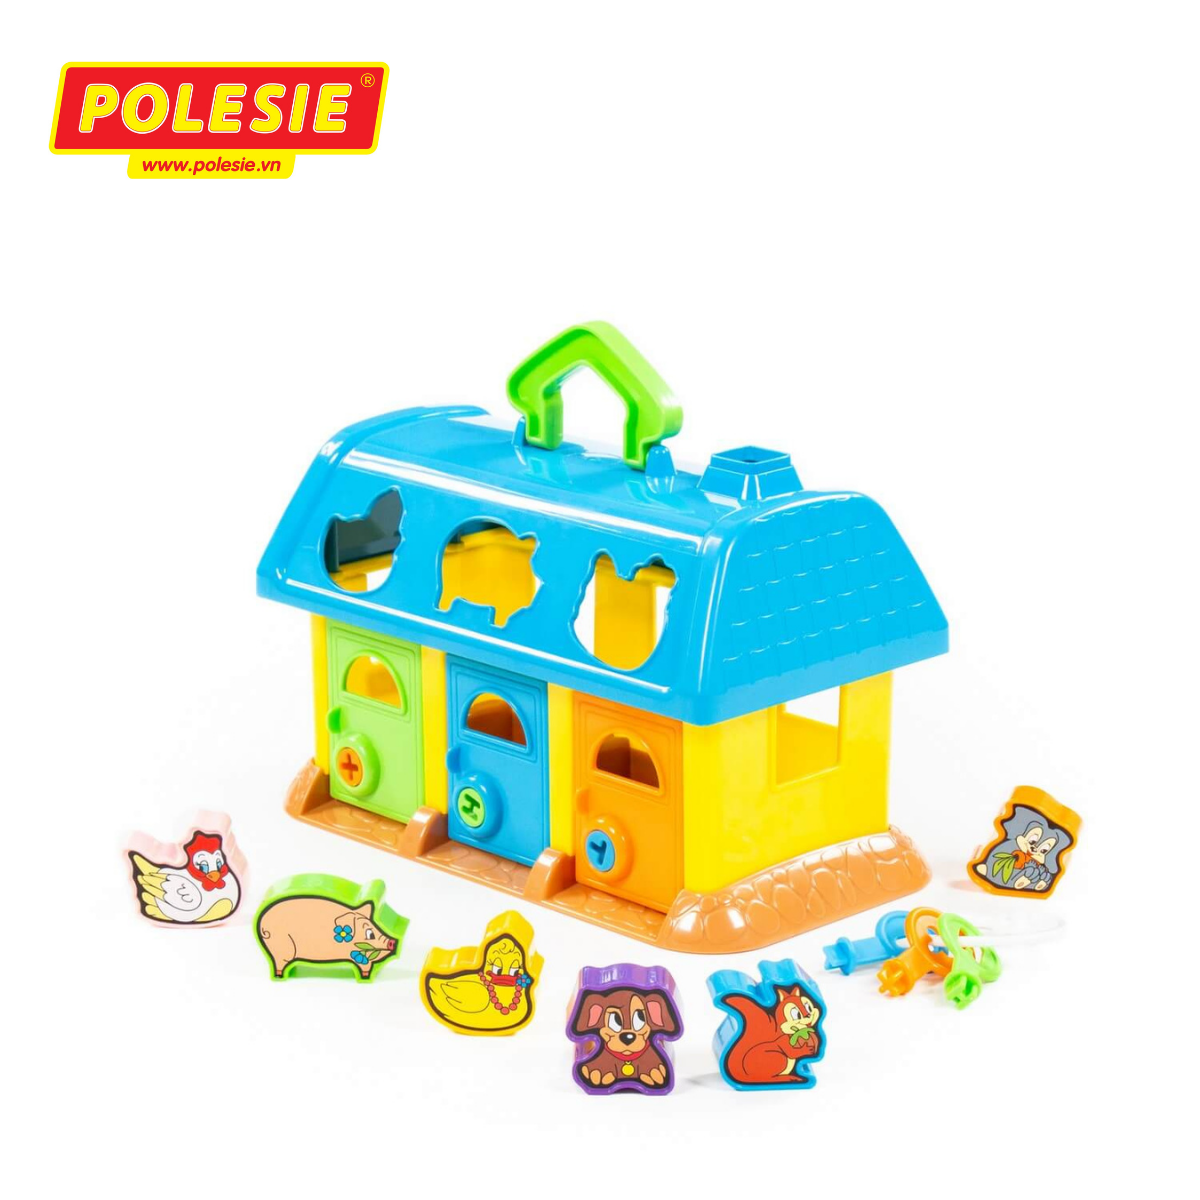 Bộ đồ chơi ngôi nhà thú cưng - Polesie Toys